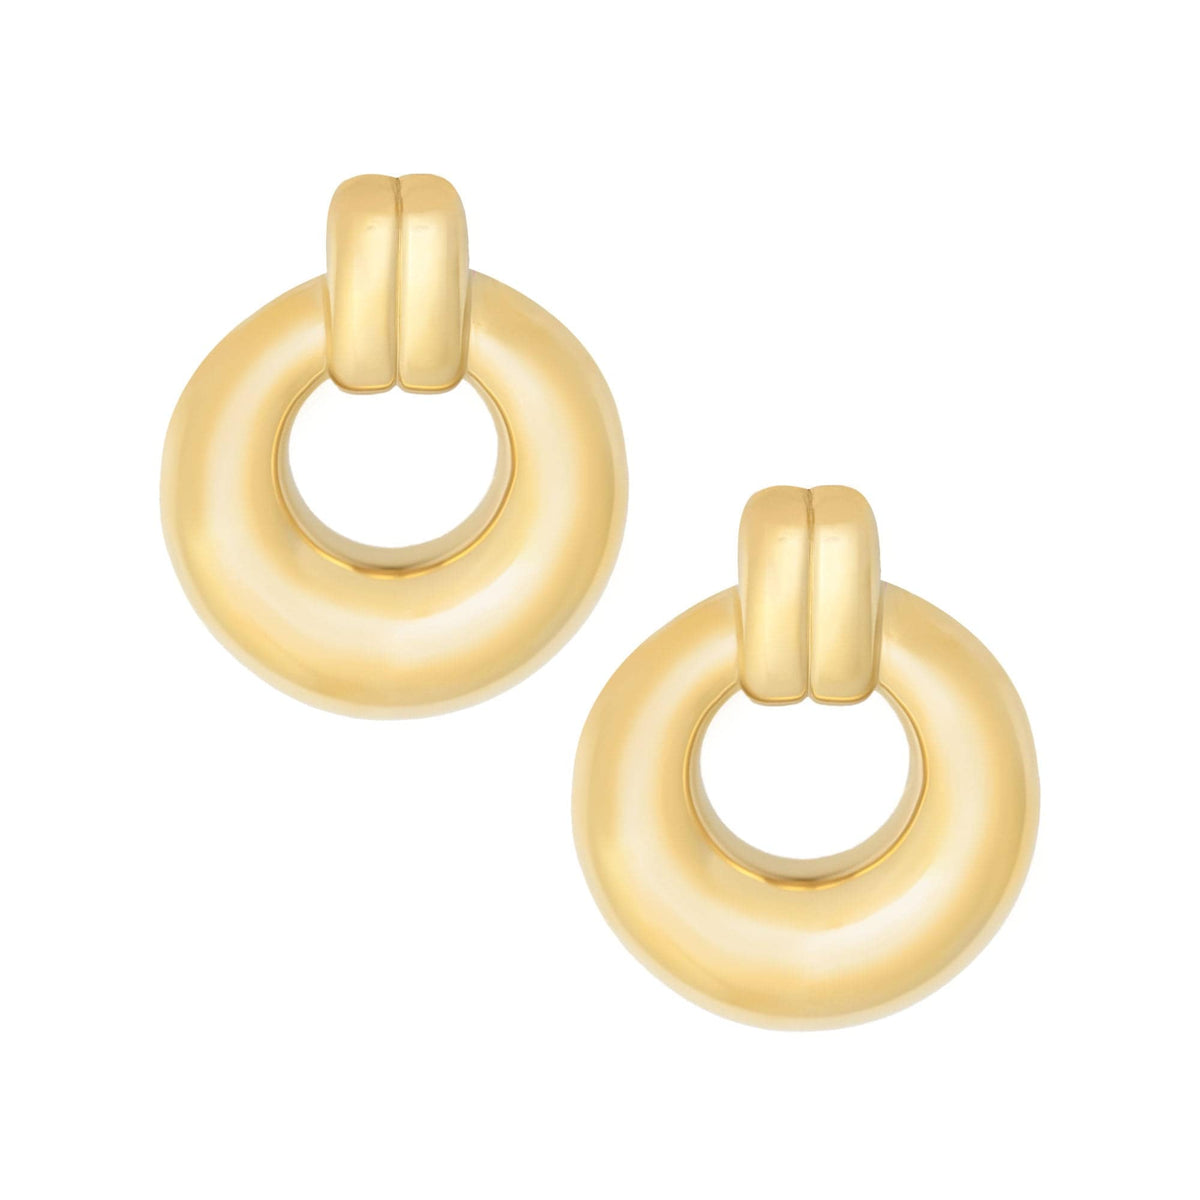 Bohomoon Stainless Steel Marbella Stud Earrings